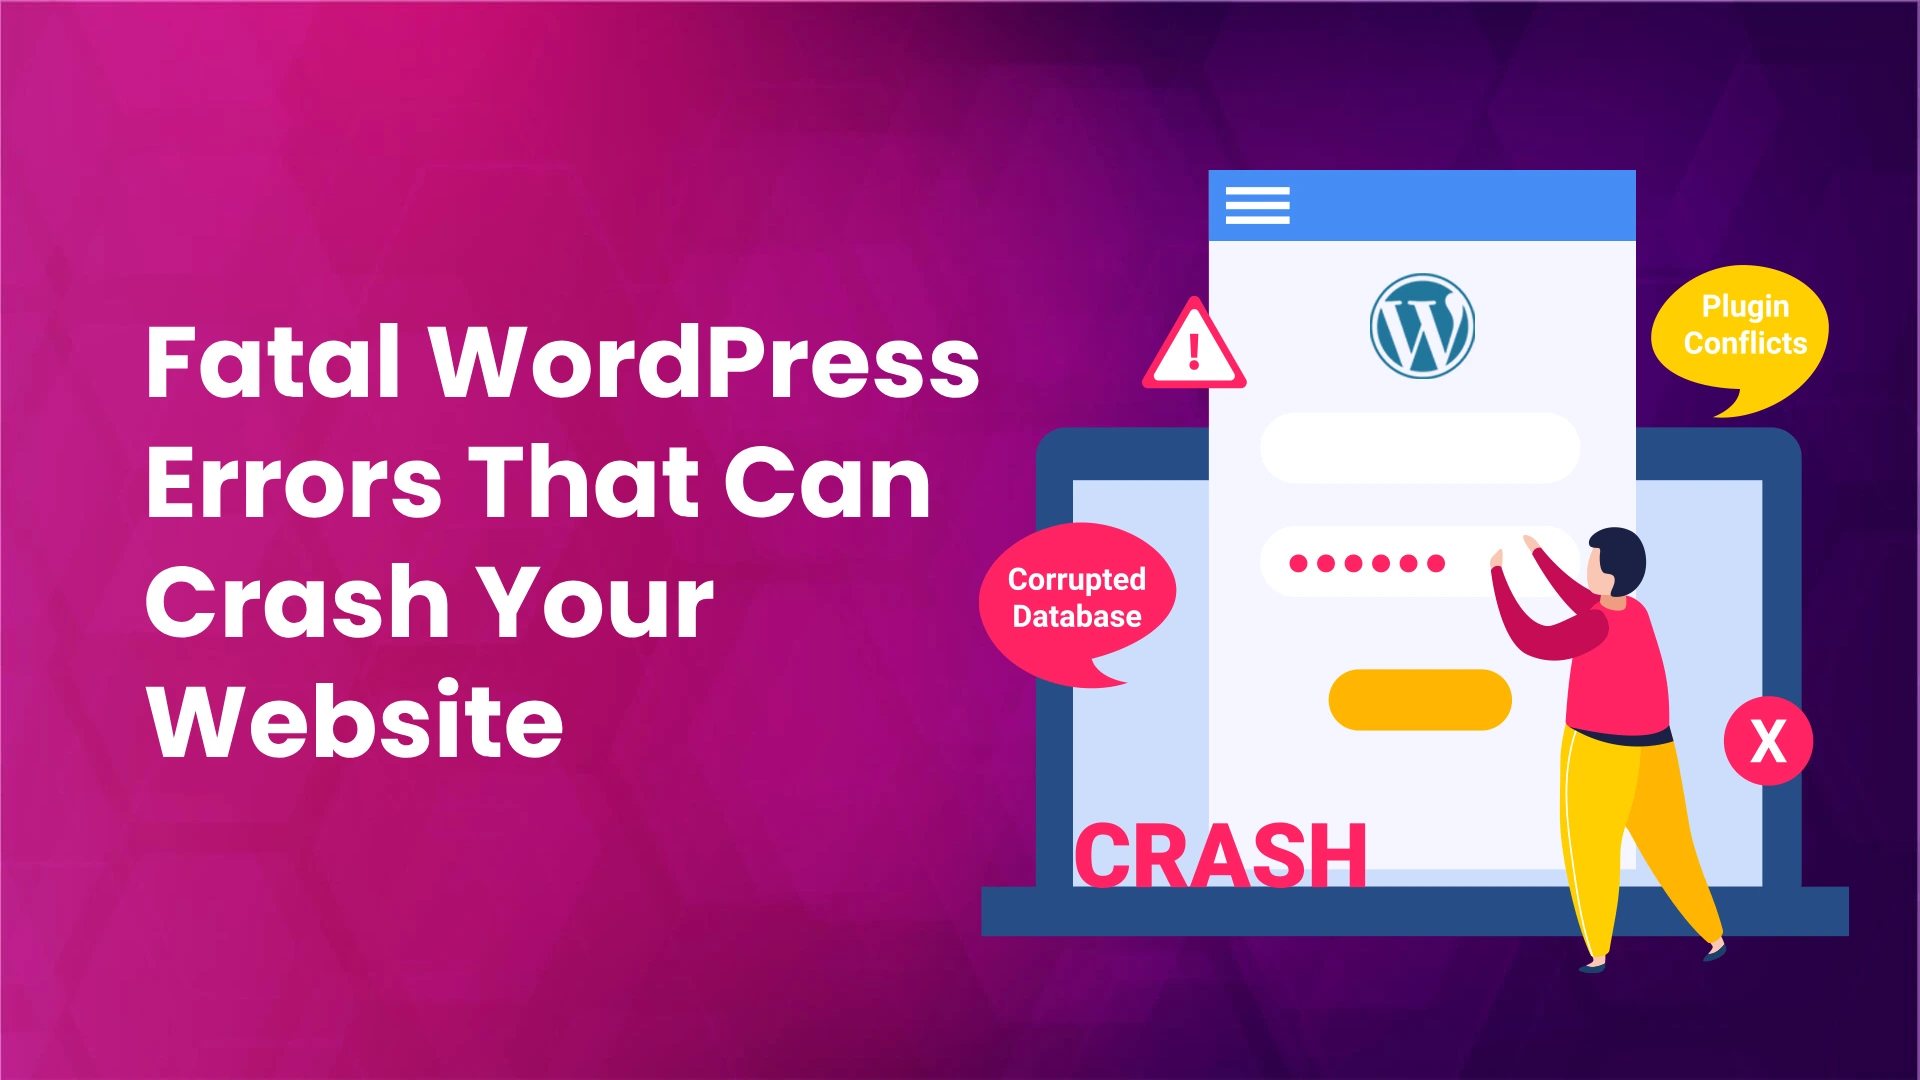 WordPress Error that can crash your website